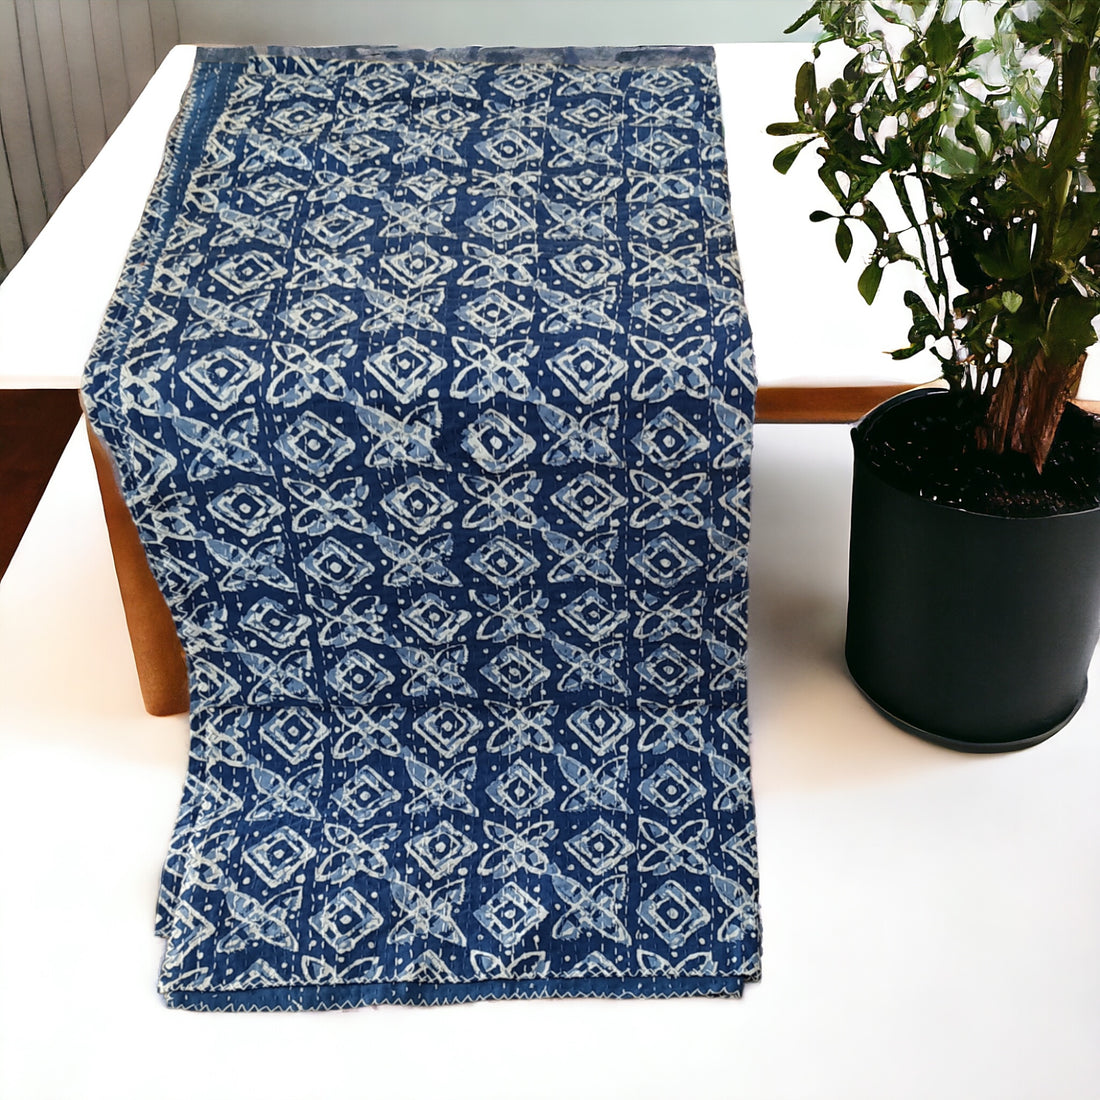 Blue Indigo Cotton Embroidered Kantha Blanket